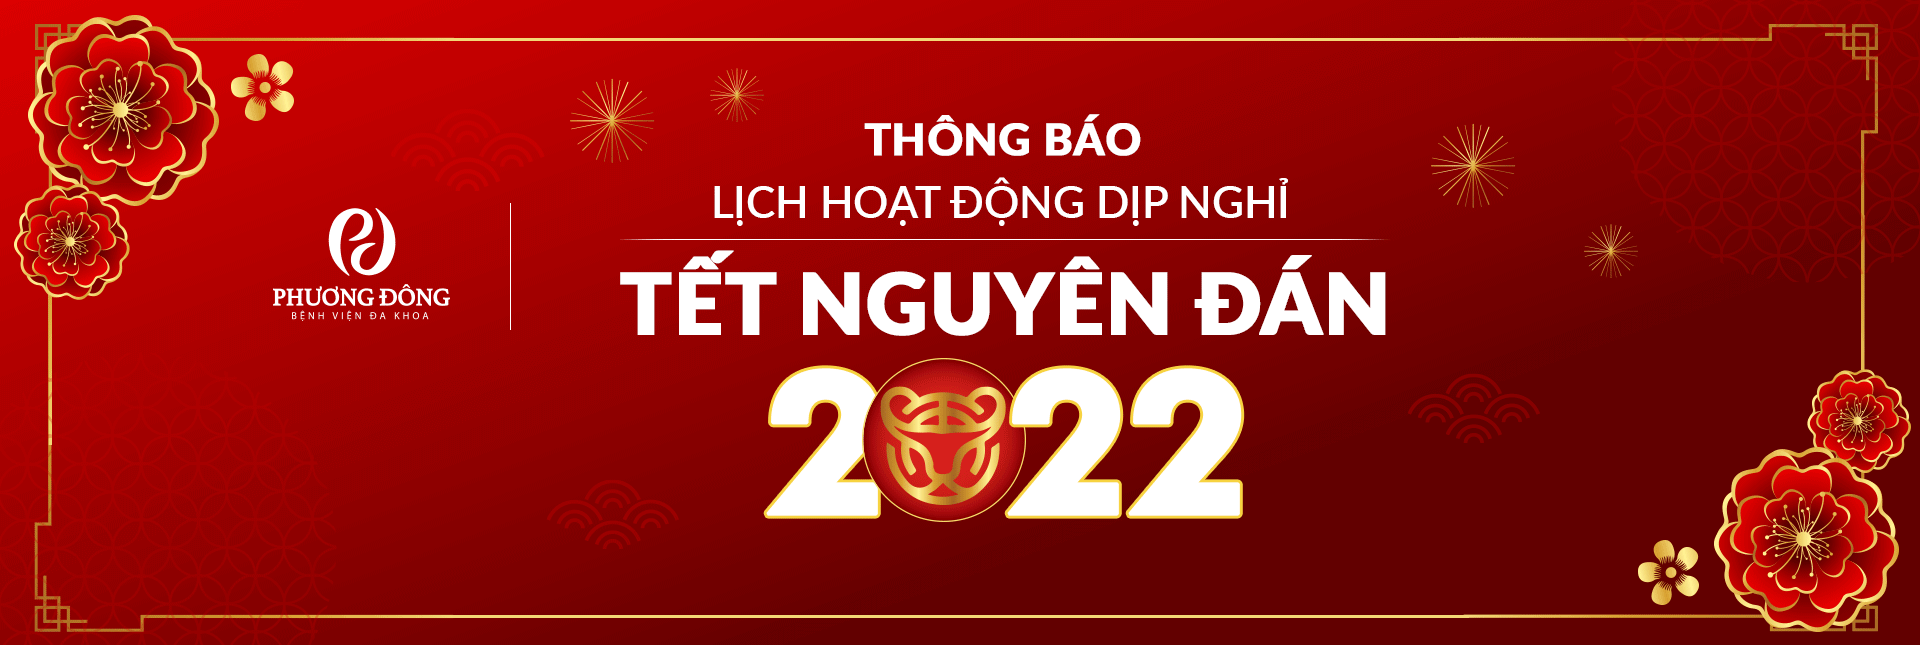 Banner thông báo lịch hoạt động dịp nghỉ Tết Nguyên Đán Nhâm Dần 2022